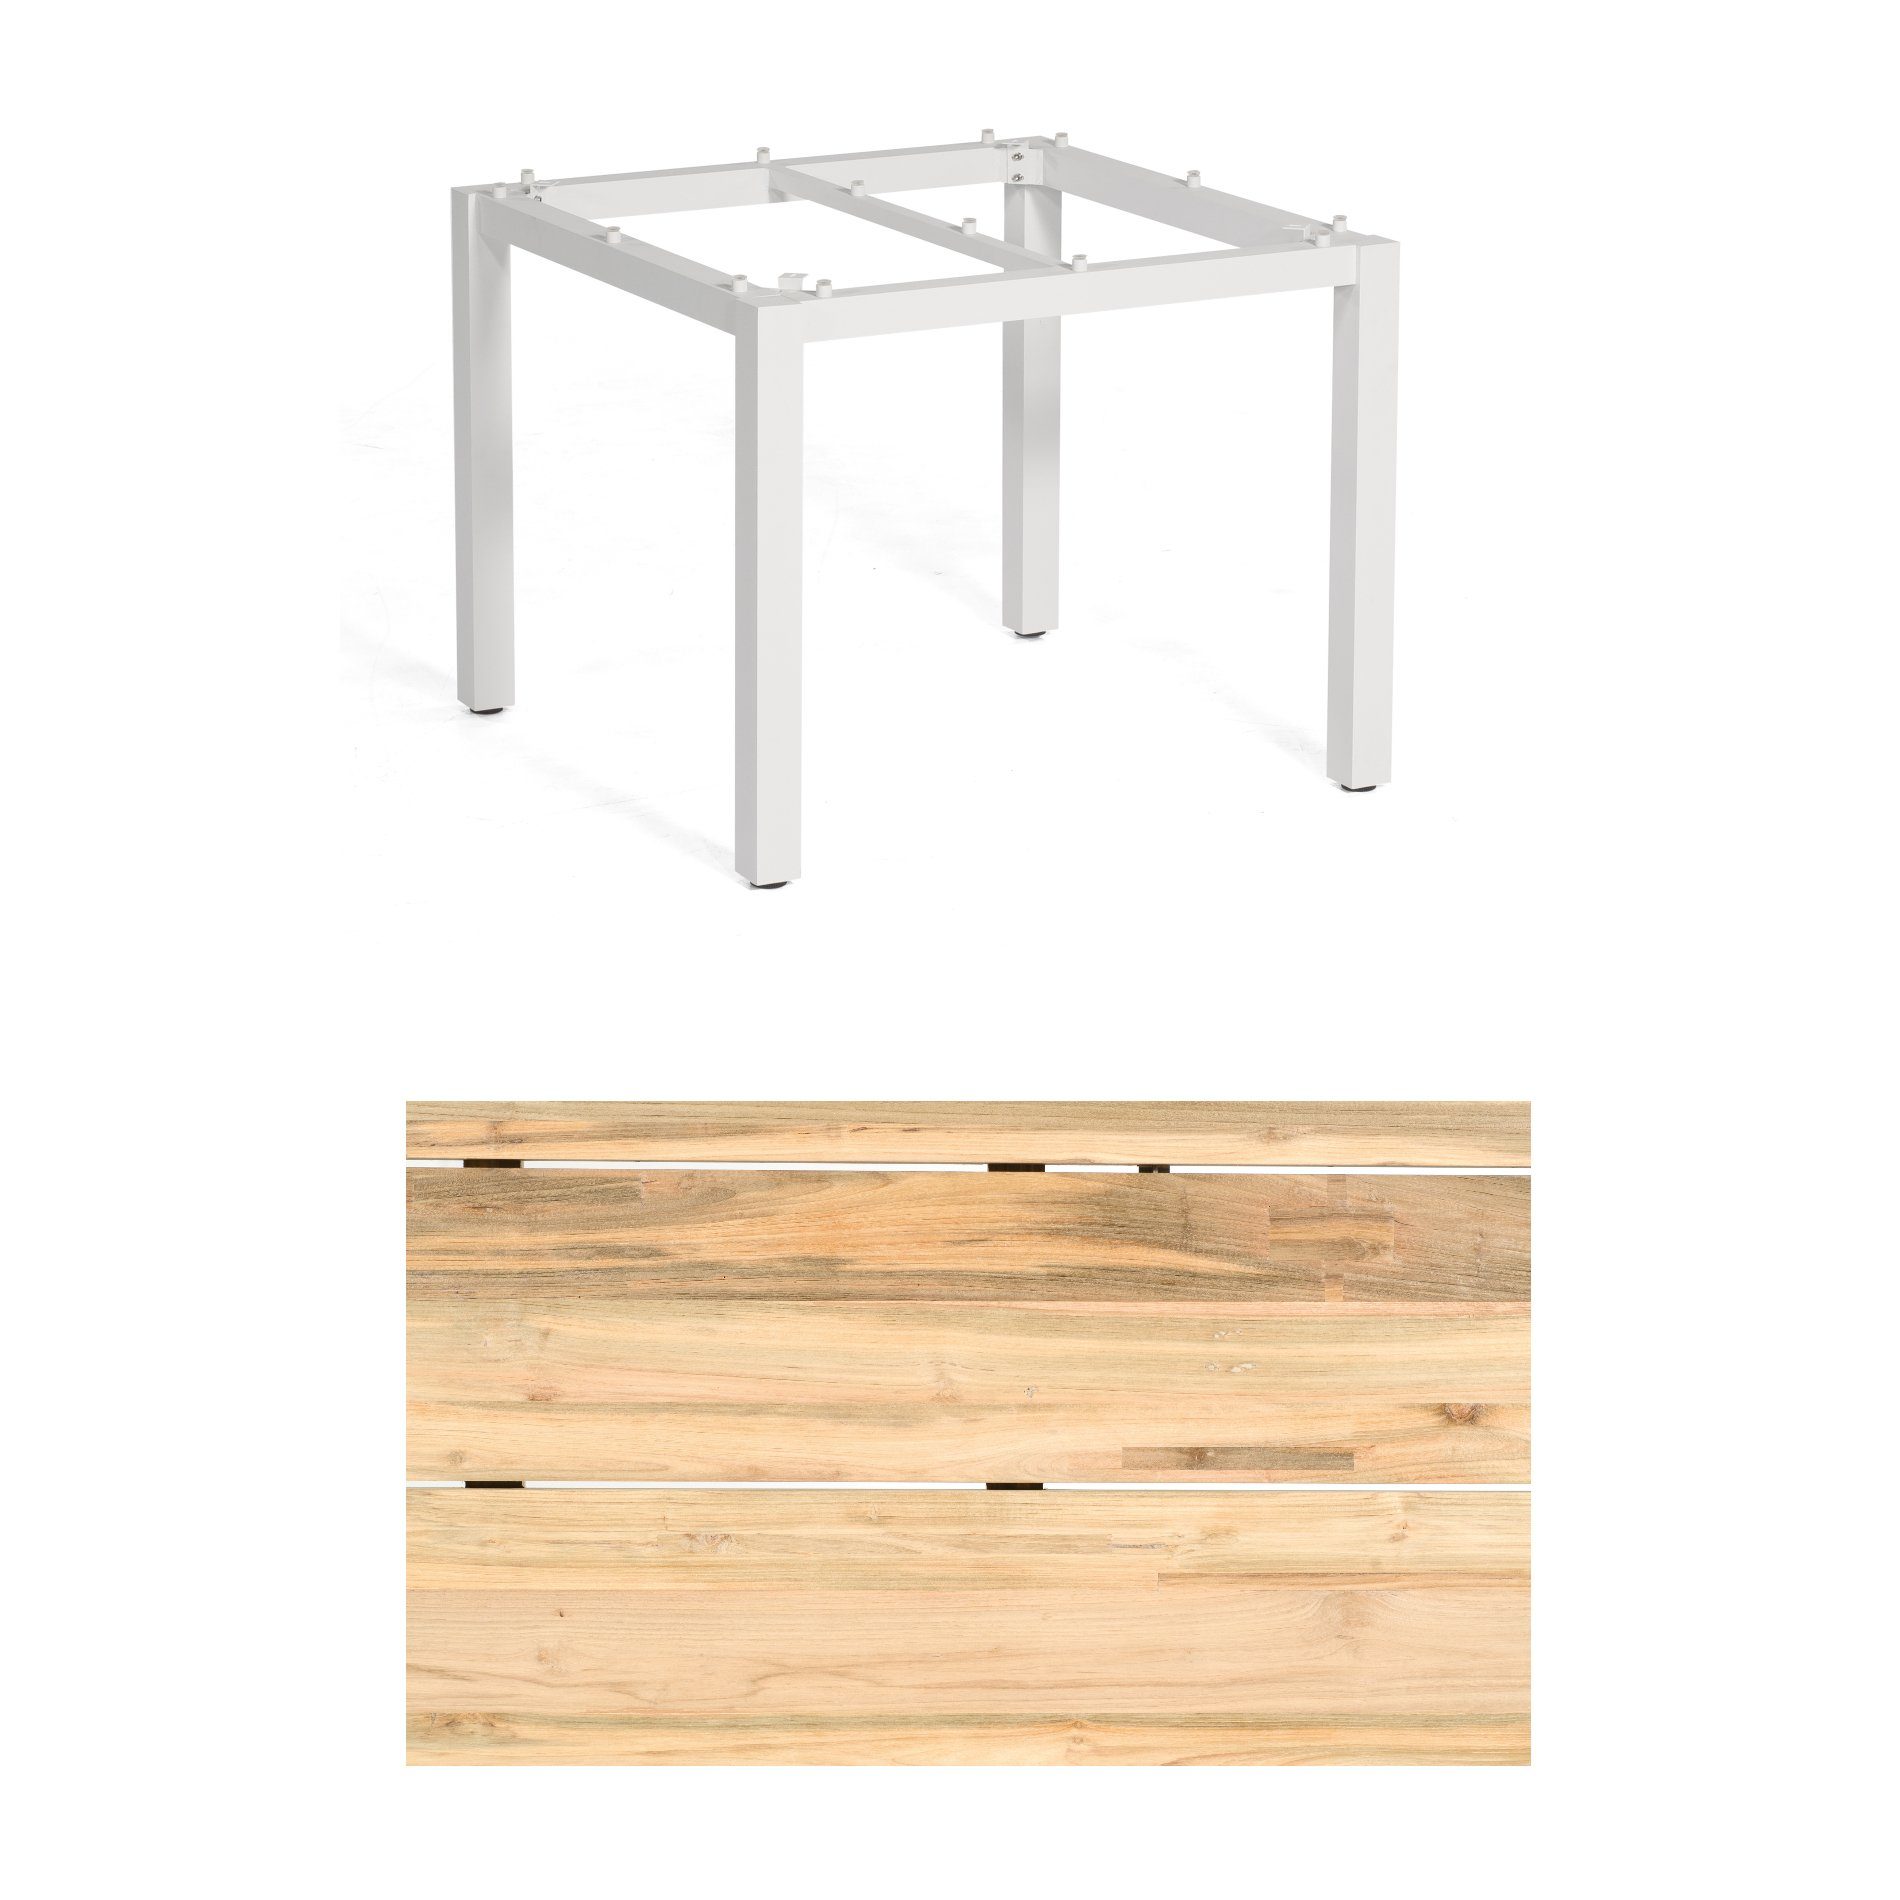 Sonnenpartner "Base" Gartentisch, Gestell Aluminium weiß, Tischplatte Old Teak Natur, Größe: 90x90 cm